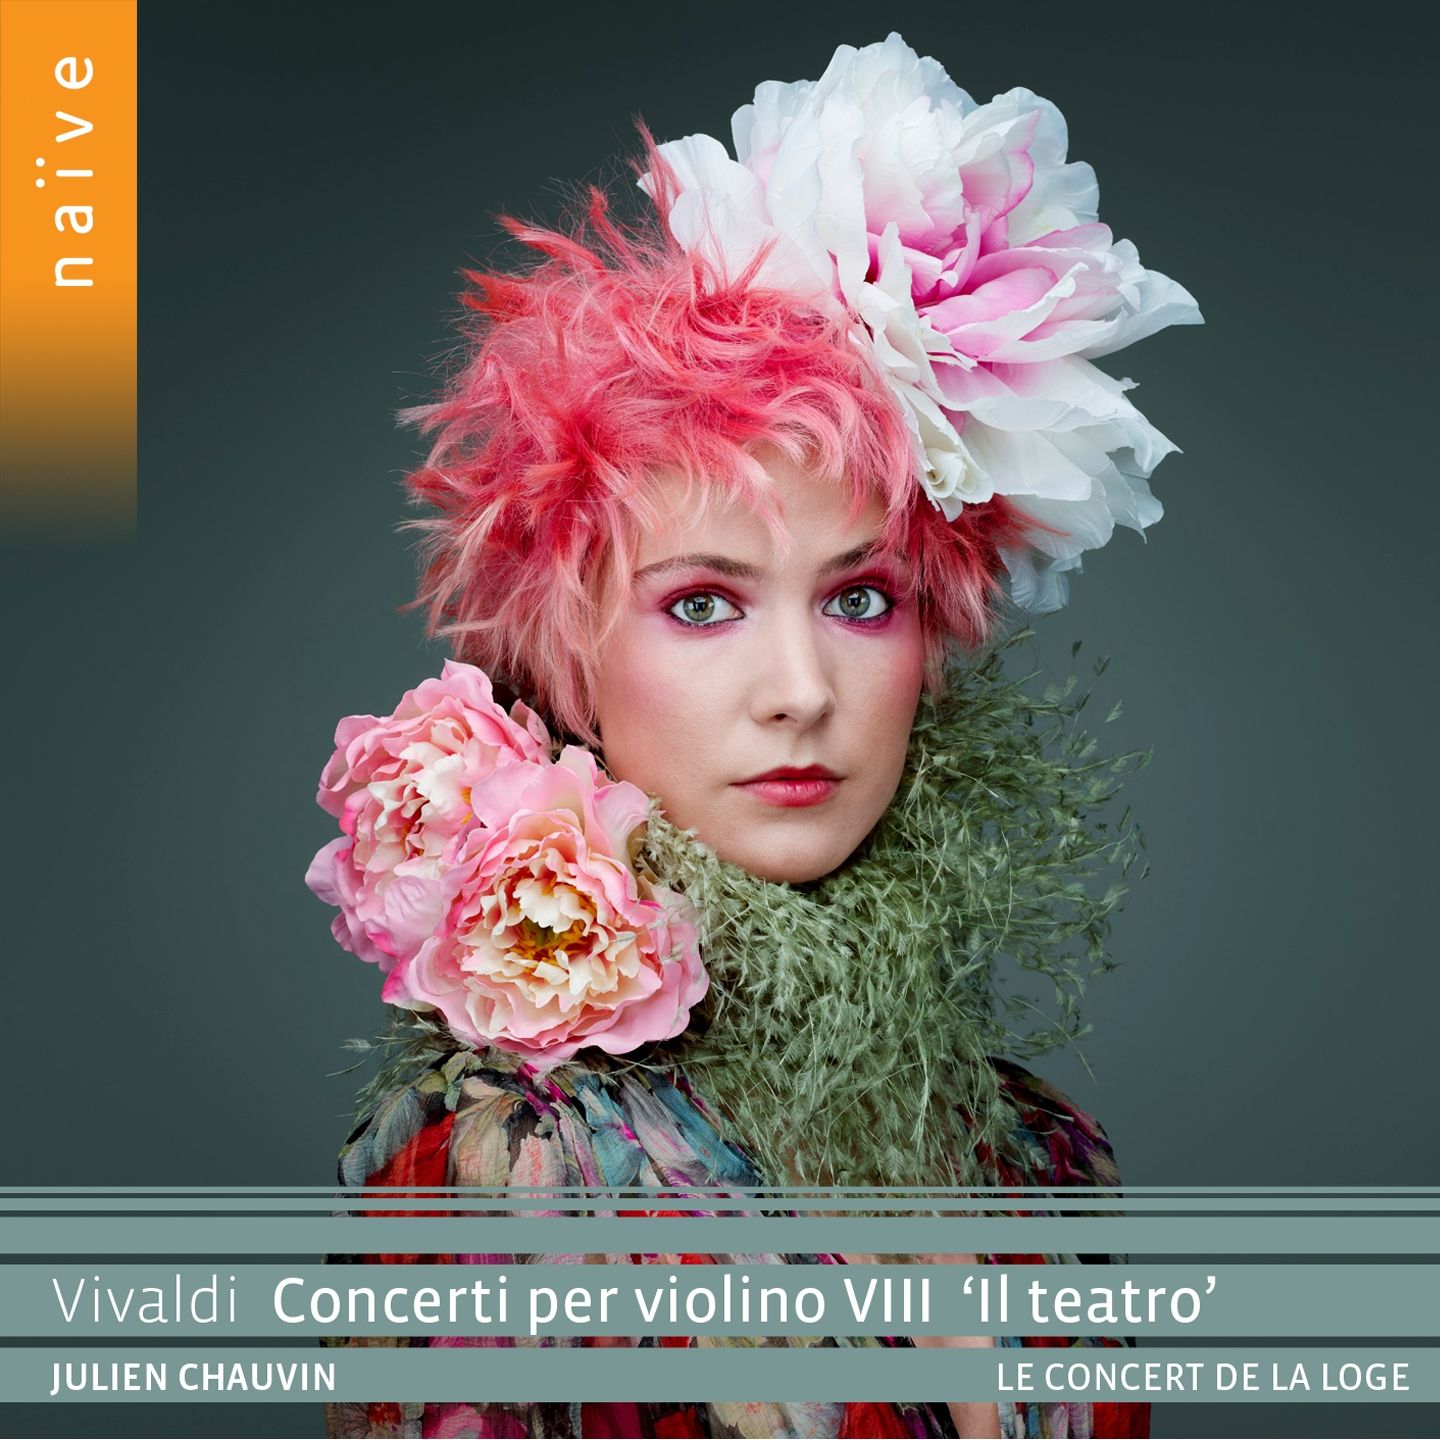 Julien Chauvin, Le Concert de la Loge – VIVALDI Concerti per violino VIII “Il teatro” (2020) [FLAC 24bit/96kHz]